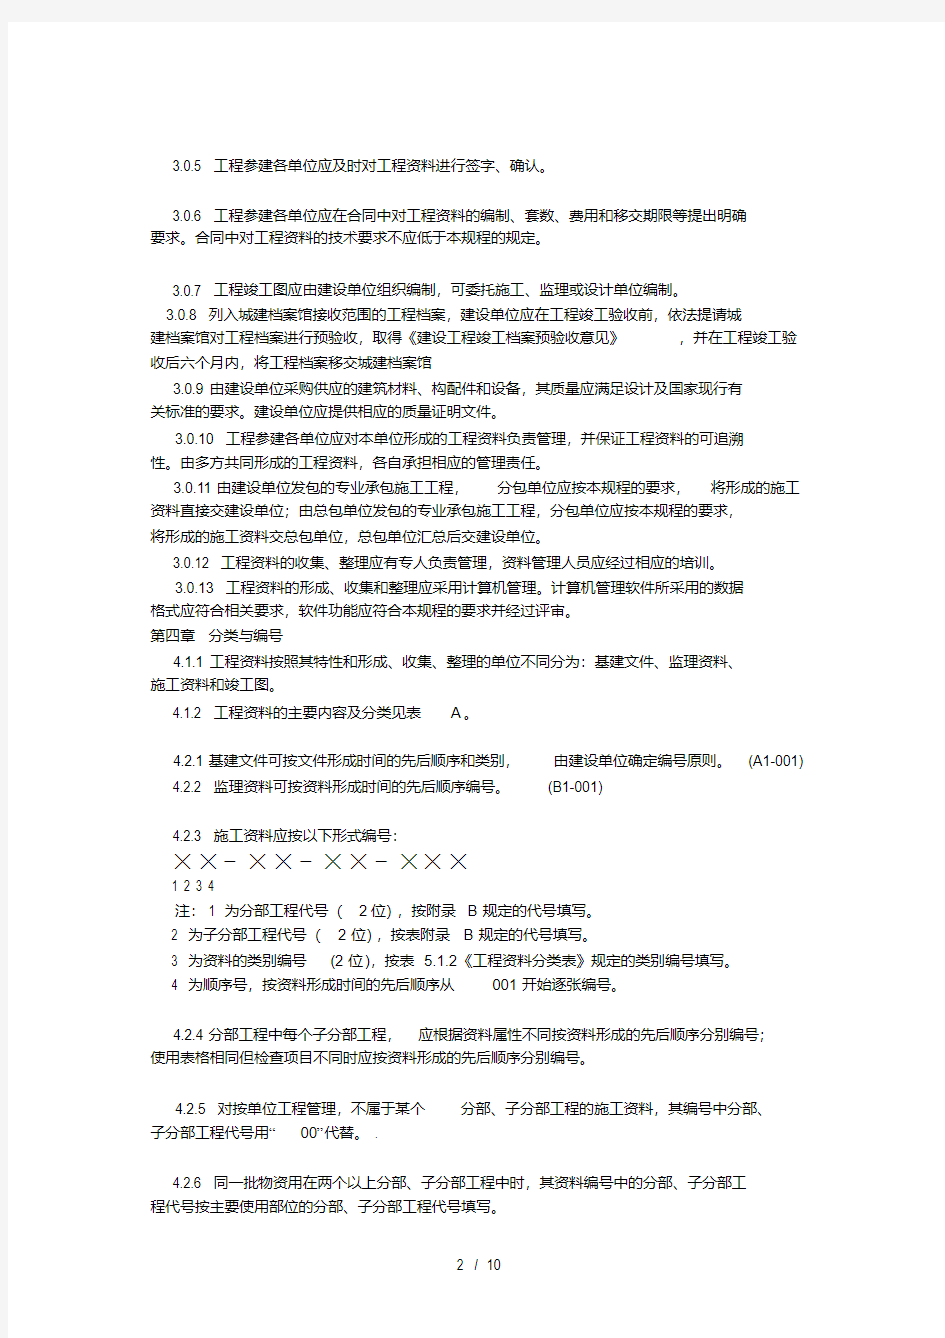 北京市建筑工程资料管理规程